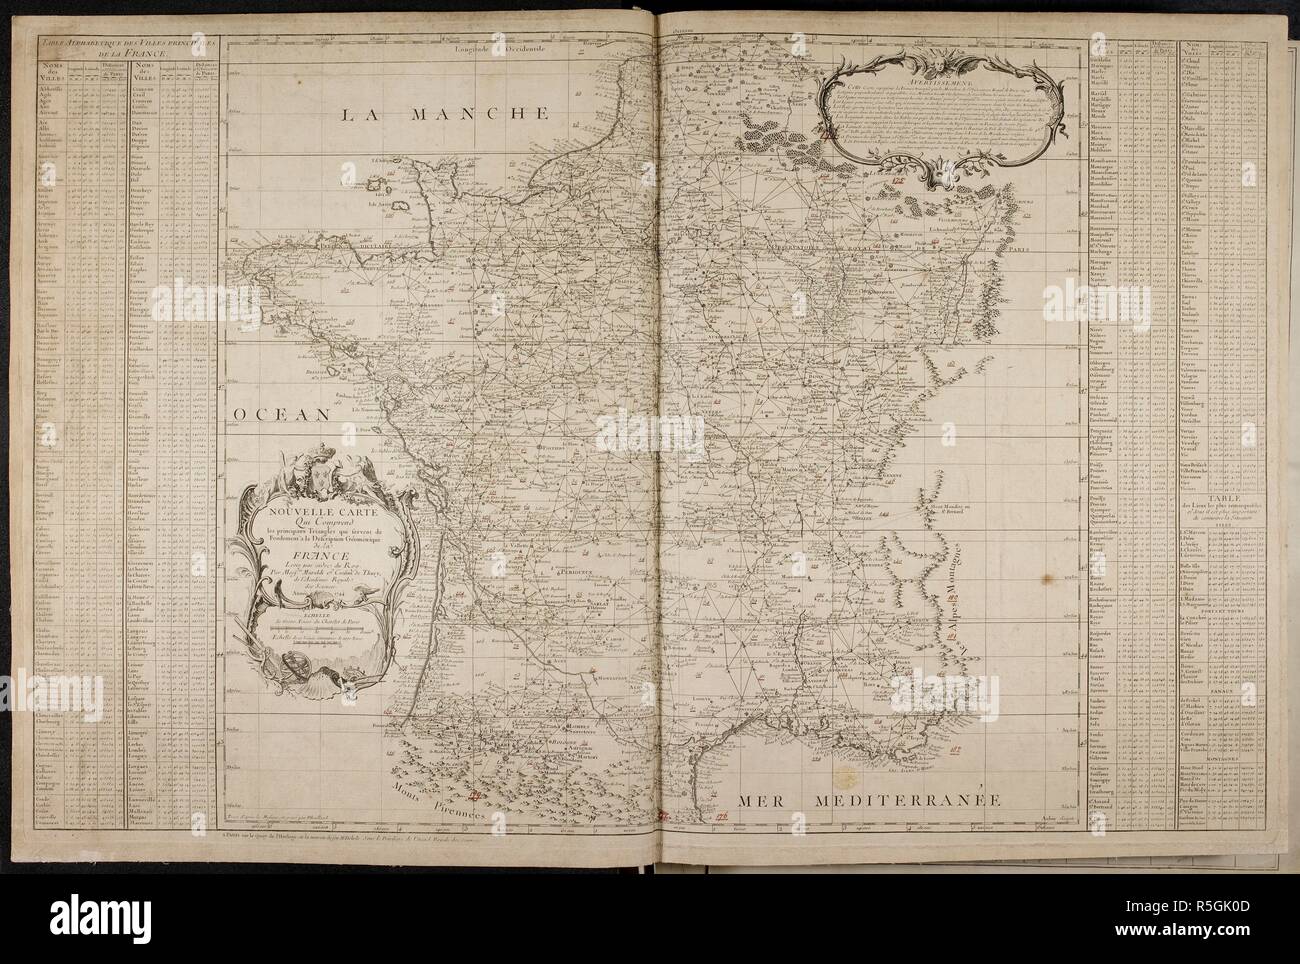 France. Carte de France. Paris, 1744-1760. Map of France. LevÃ©e par Ordre du Roy par Messrs. Miraldi & Cassini de Thury, de l'AcadÃ©mie Royale des Sciences. [GravÃ©e par C. Aldring, J.A. Aveline, R. Brunet, N. Chalmandrier, B. Desfontaines, J.L. Dupain Triel, fils, Durand, Le Roy, le jeune, and J. SÃ©guin.]  Image taken from Carte de France.  Originally published/produced in Paris, 1744-1760. . Source: Maps.1.Tab.29, Index 2. Stock Photo